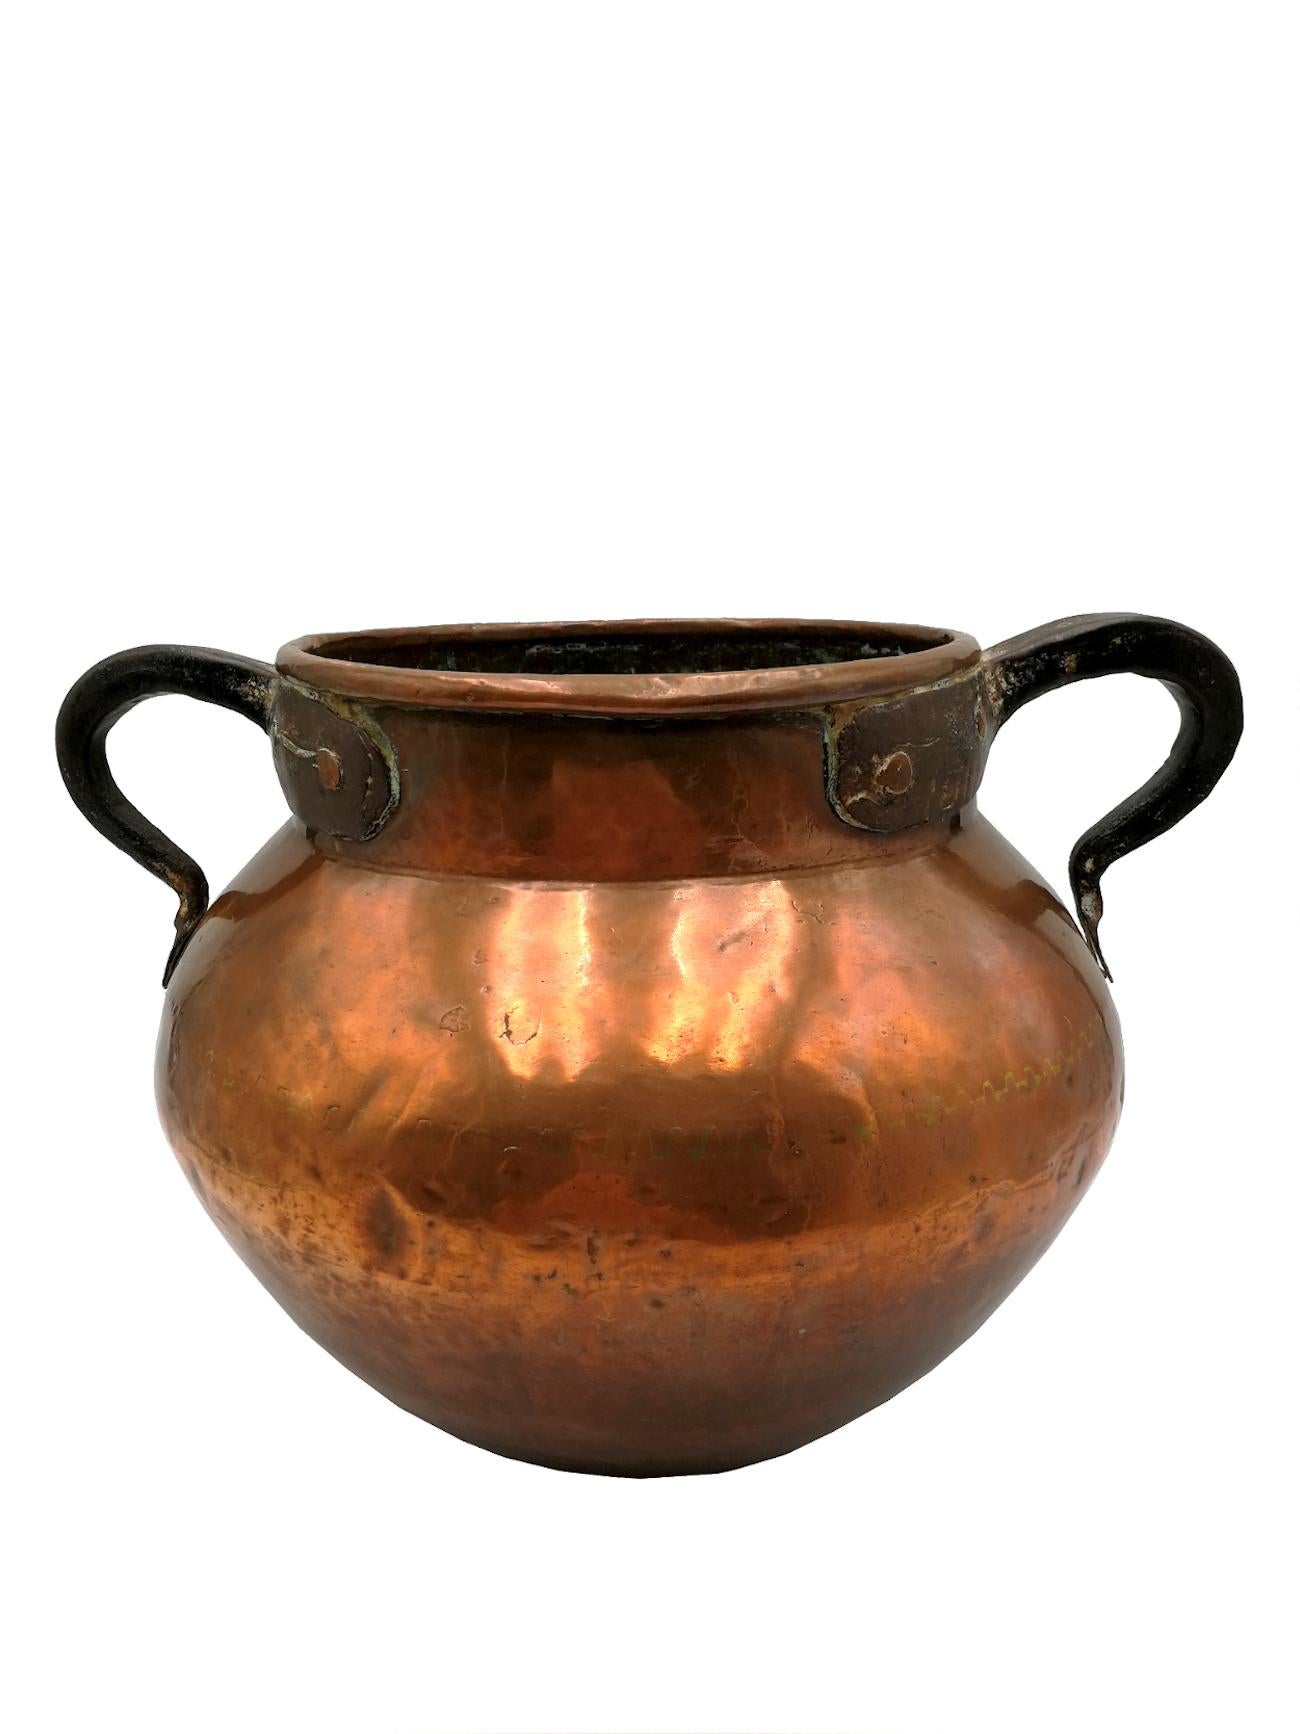 Magnifique bouilloire en cuivre du 19ème siècle faite à la main. Ce cauldron est composé de plusieurs pièces de
Cuivre qui ont été reliés entre eux selon les traditions ancestrales de fabrication de chaudières et de chaudières
qui, à mesure